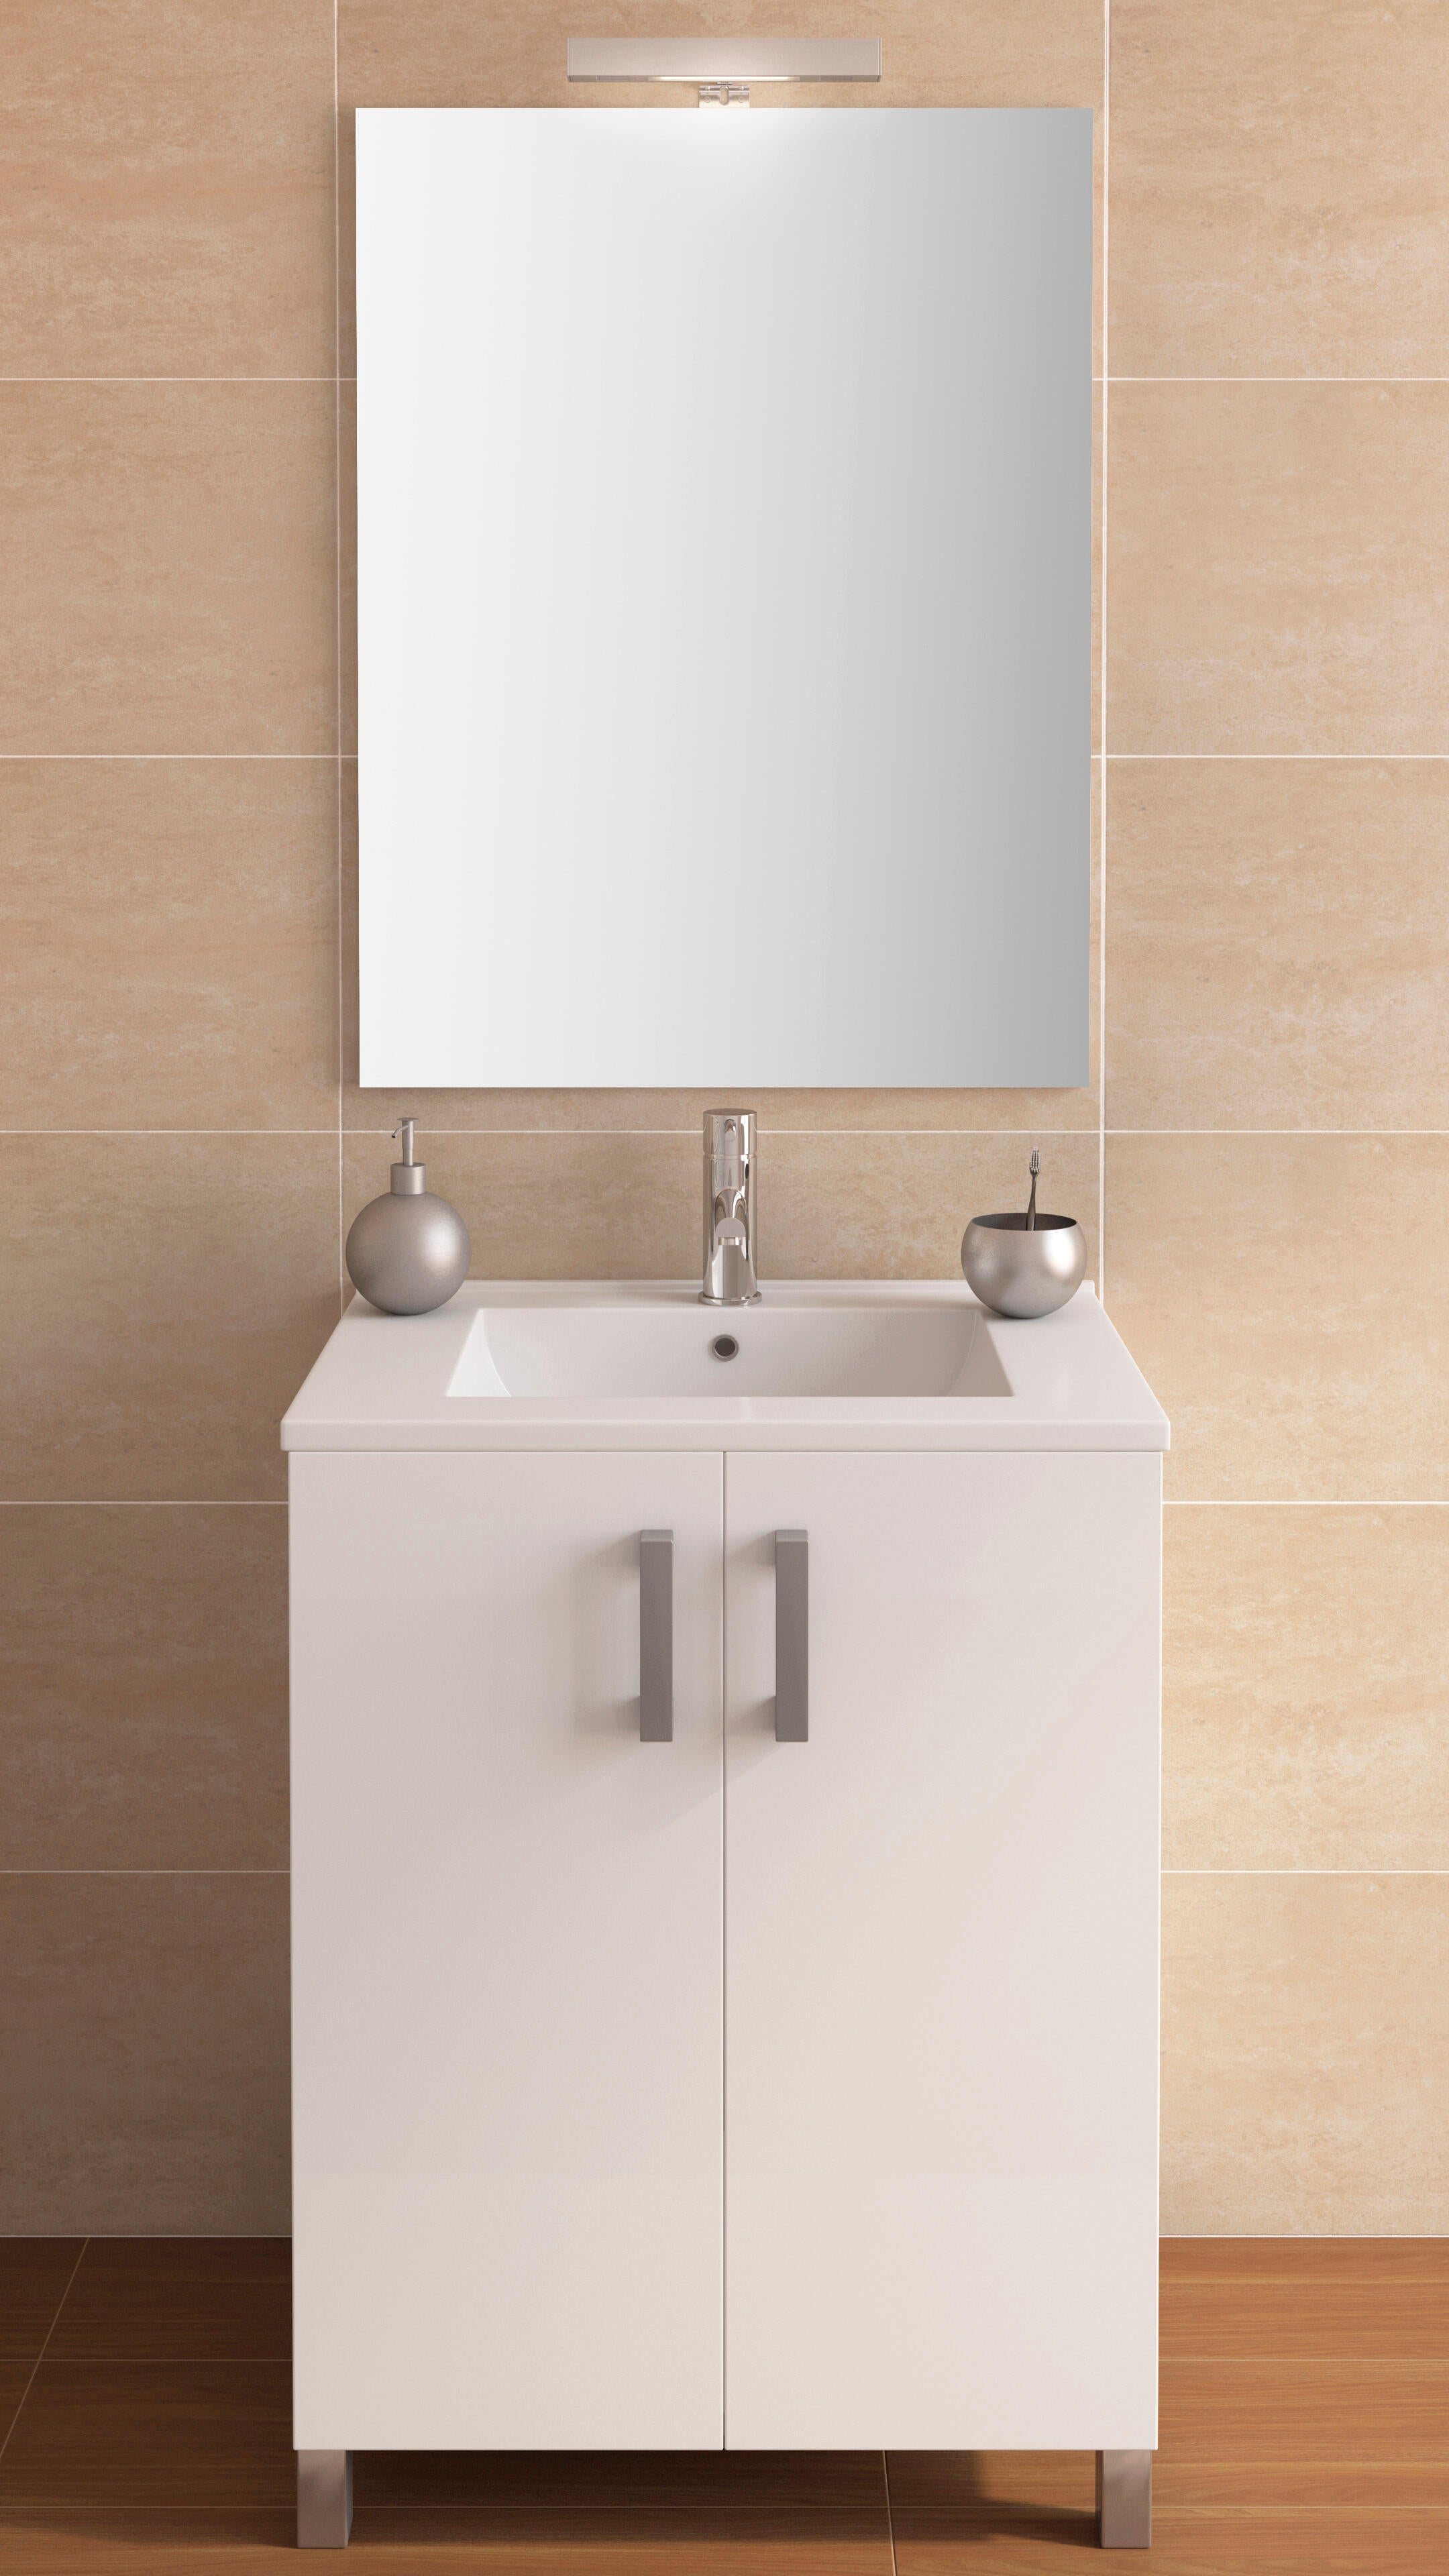 Calibre Gracias En todo el mundo Mueble de baño Eco blanco 60 x 45 cm | Leroy Merlin